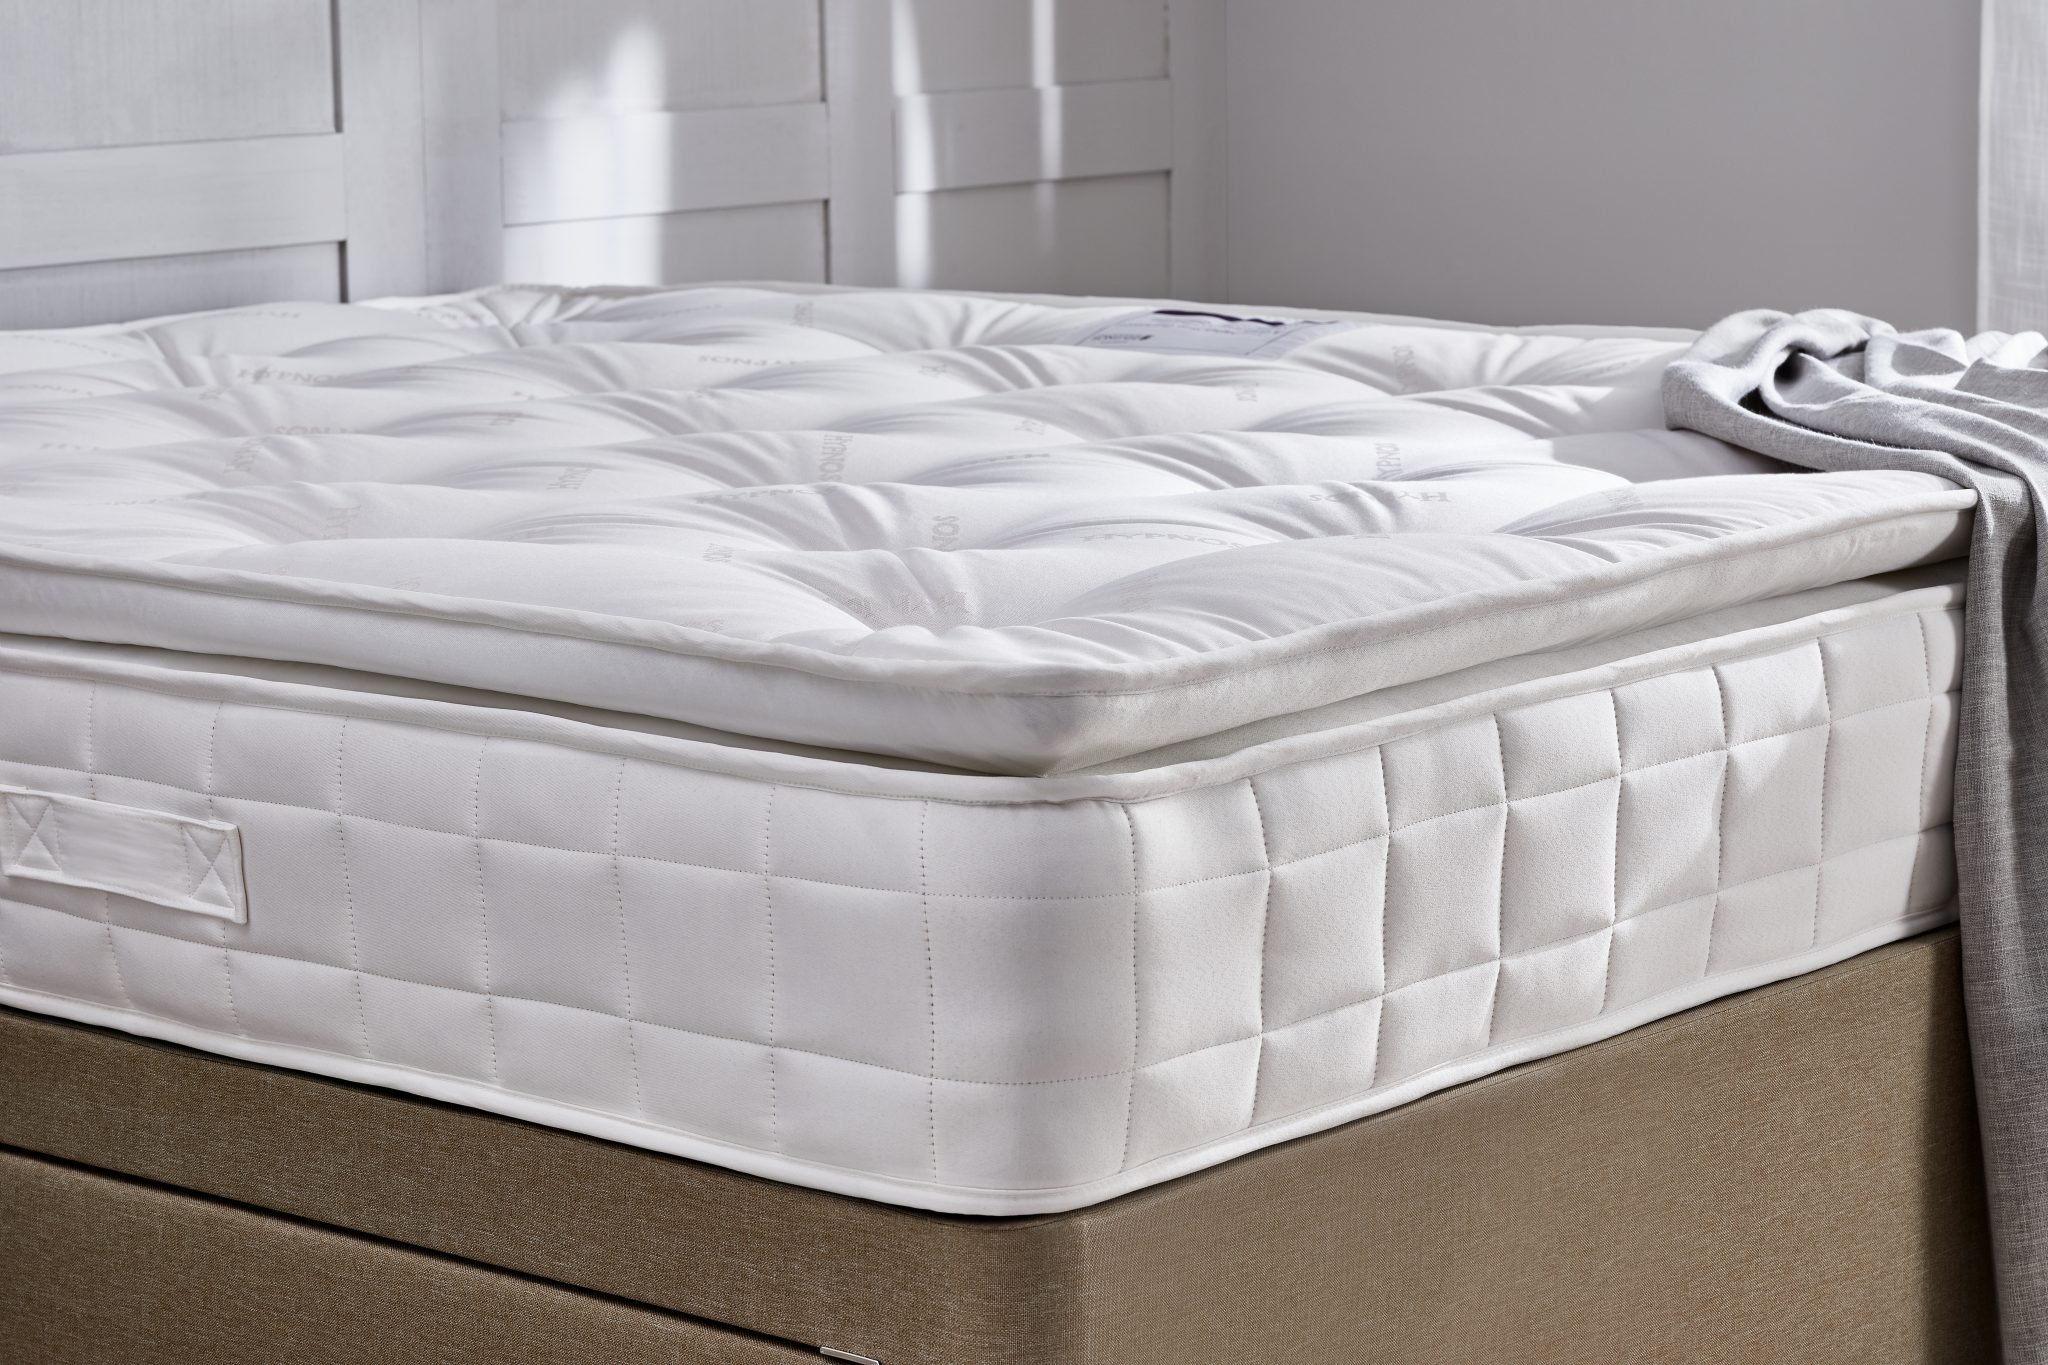 premier inn beds mattresses